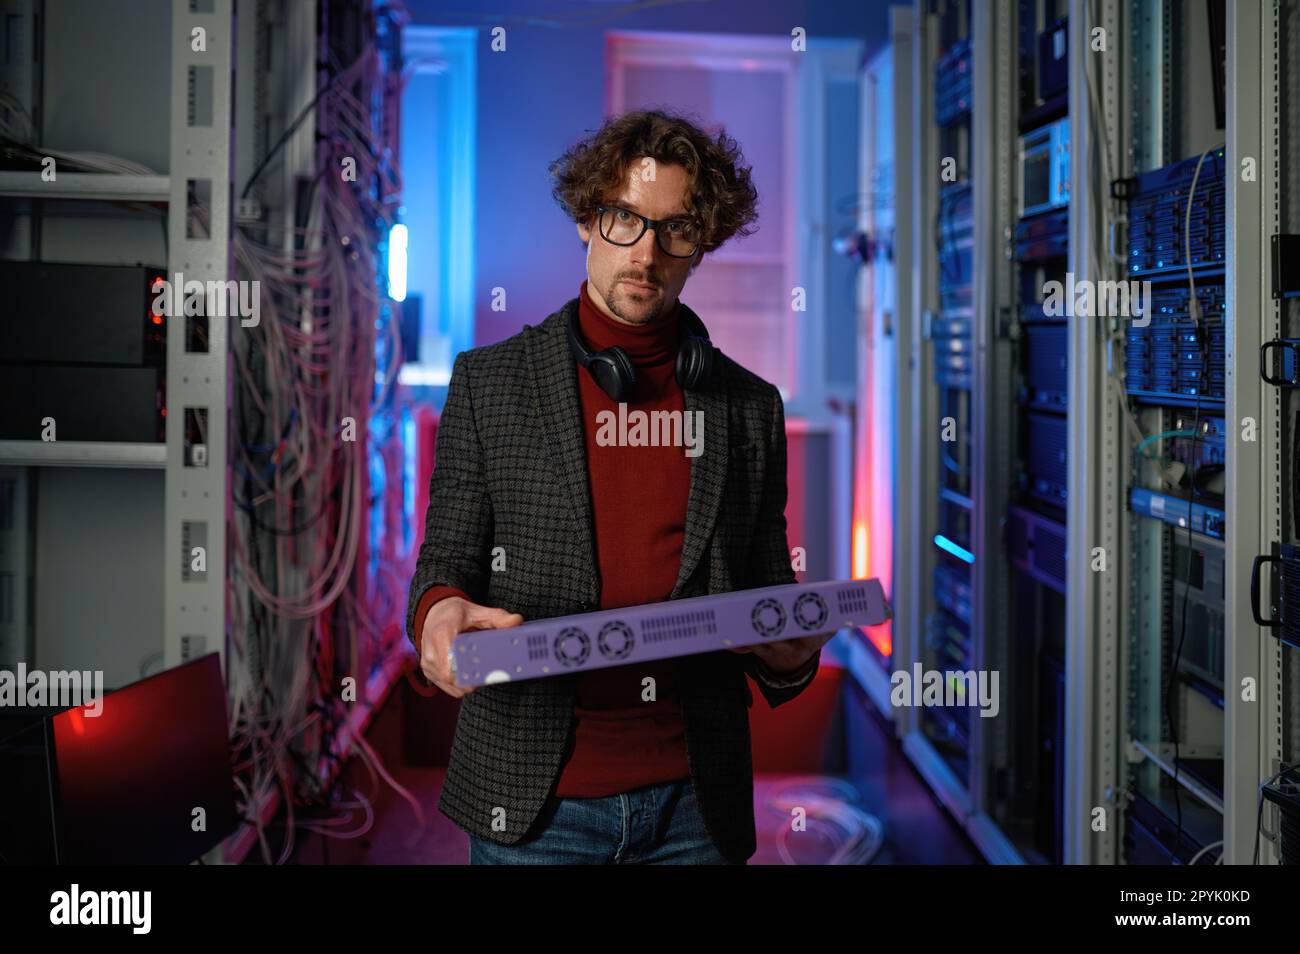 Porträt eines IT-Spezialisten, der im Serverraum Hardware in der Hand hält Stockfoto